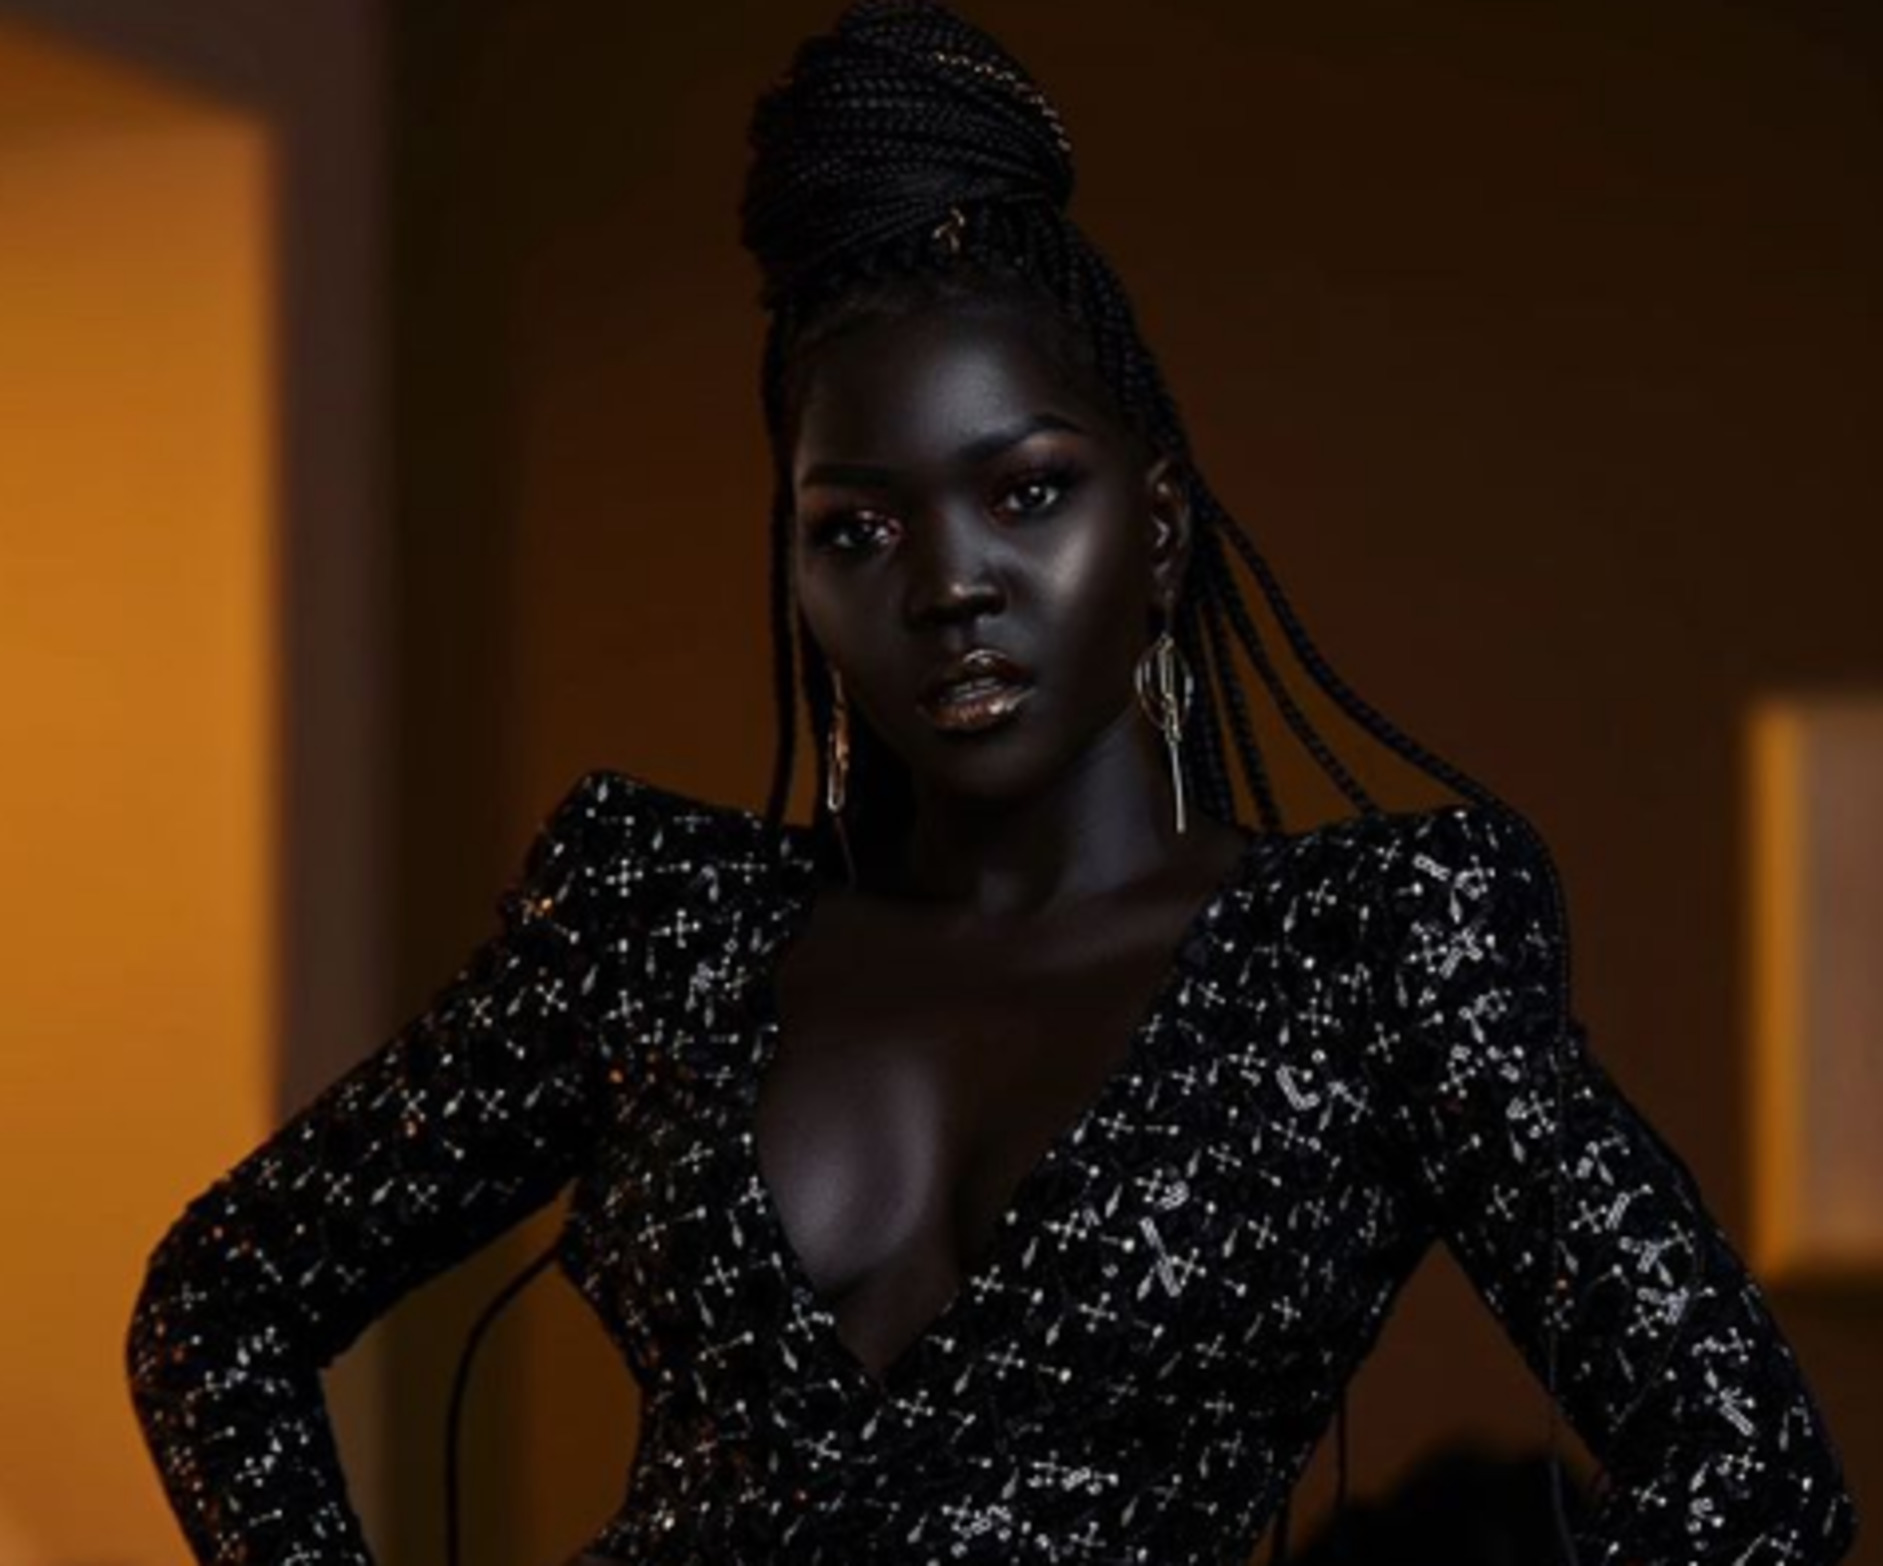 Темная негритянка. Королева тьмы - Ньяким Гатвех - модель из Южного Судана. Няким Гатвеч. Ньяким Королева тьмы модель из Судана. Модель из Южного Судана Nyakim Gatwech,.